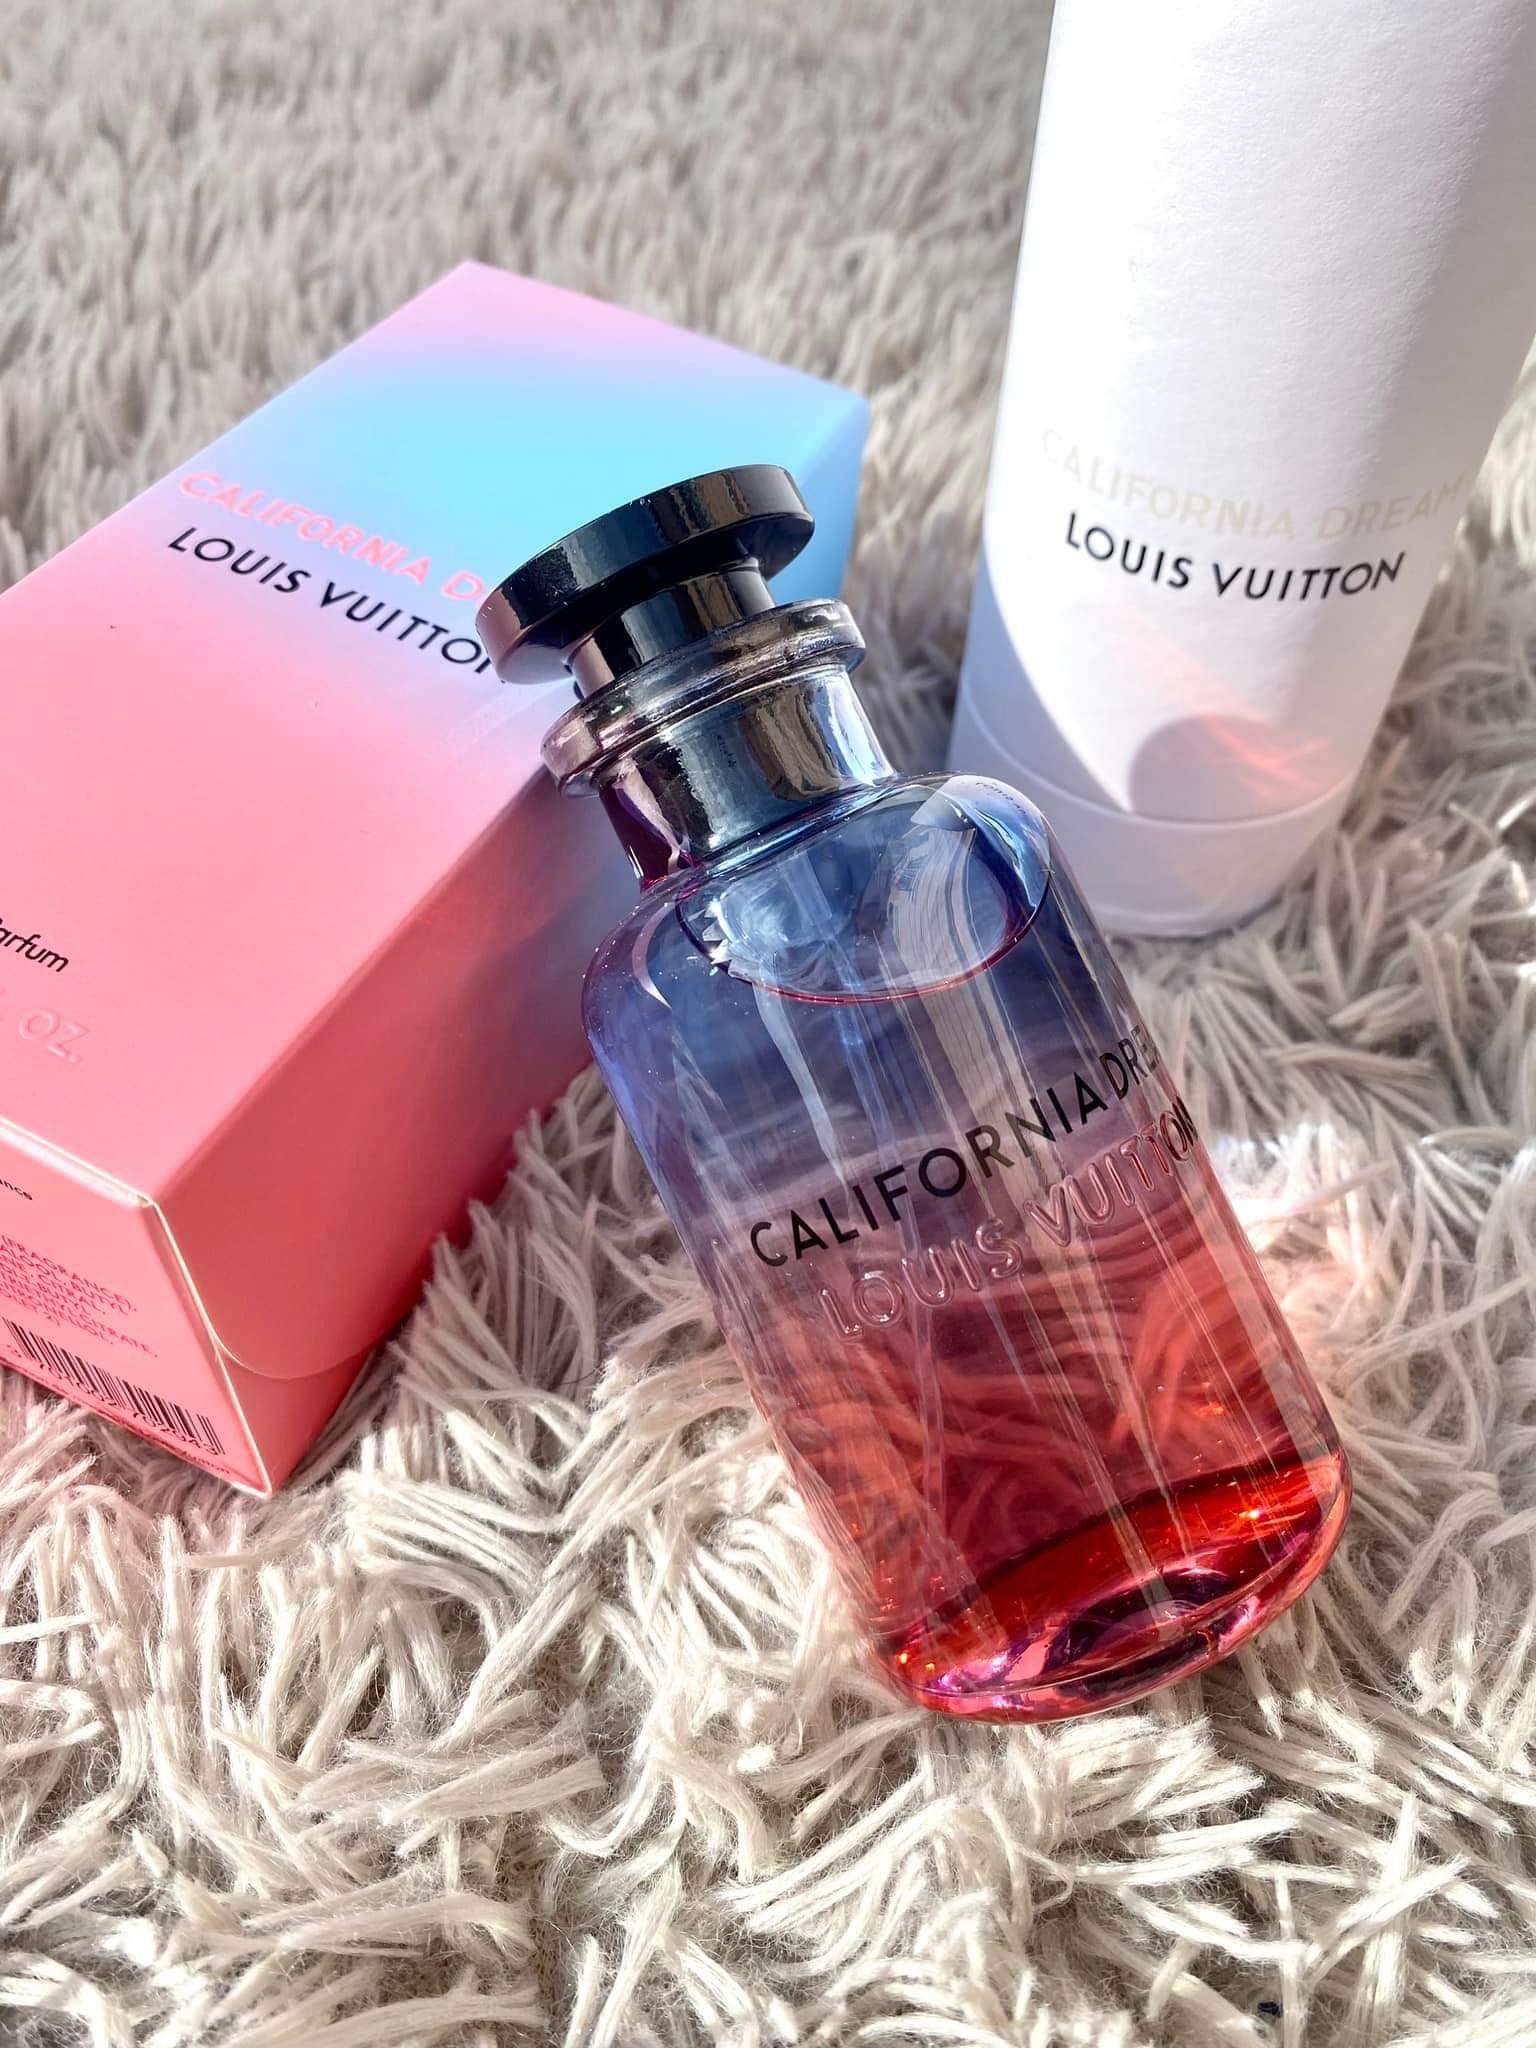 Louis Vuitton - California Dream Perfume Oil - A+ Louis Vuitton